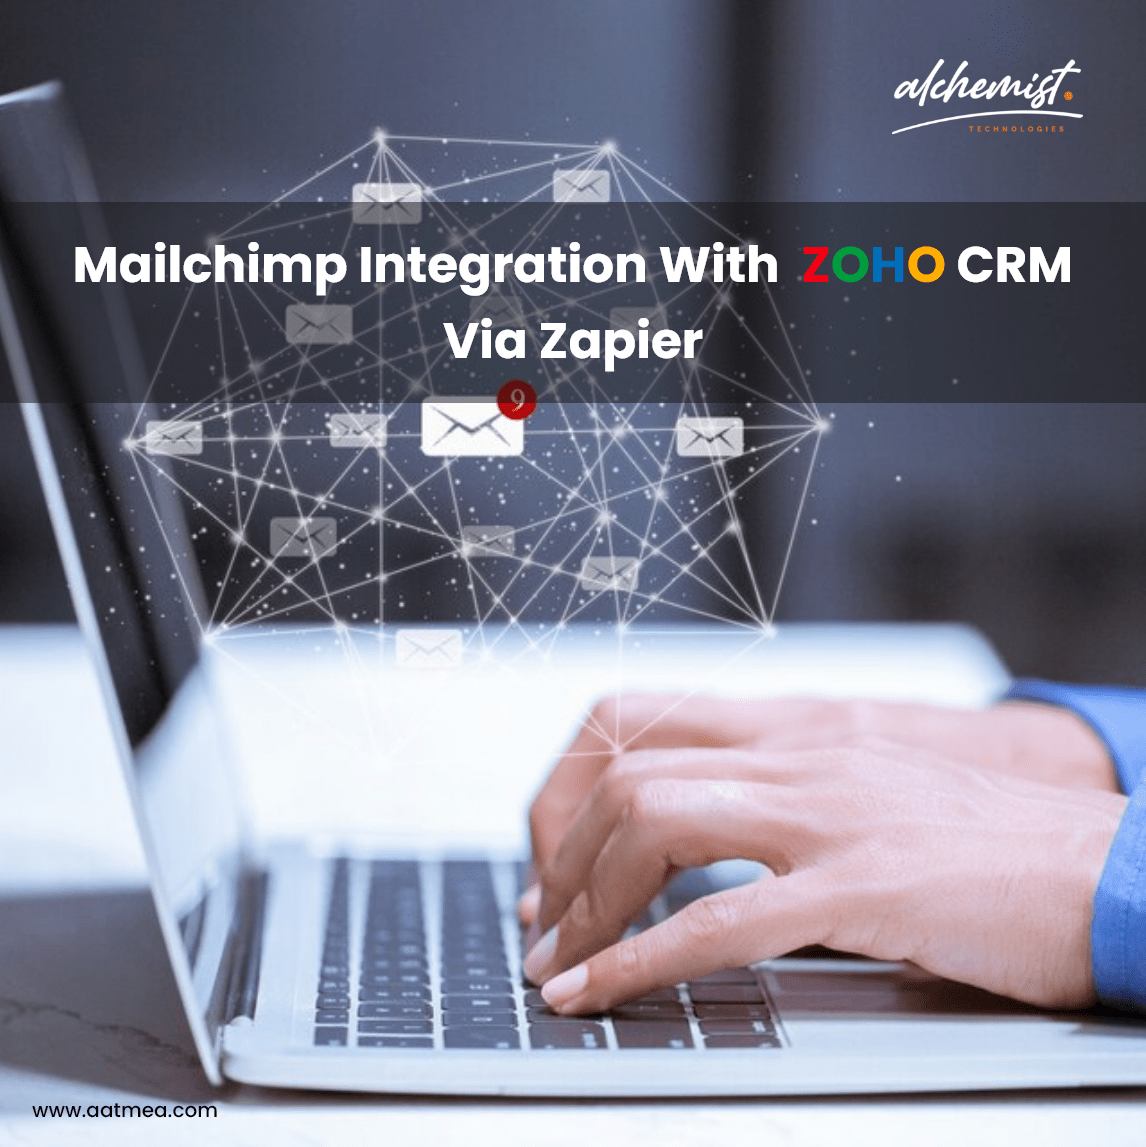 Mailchimp integration with Zoho CRM via Zapier​